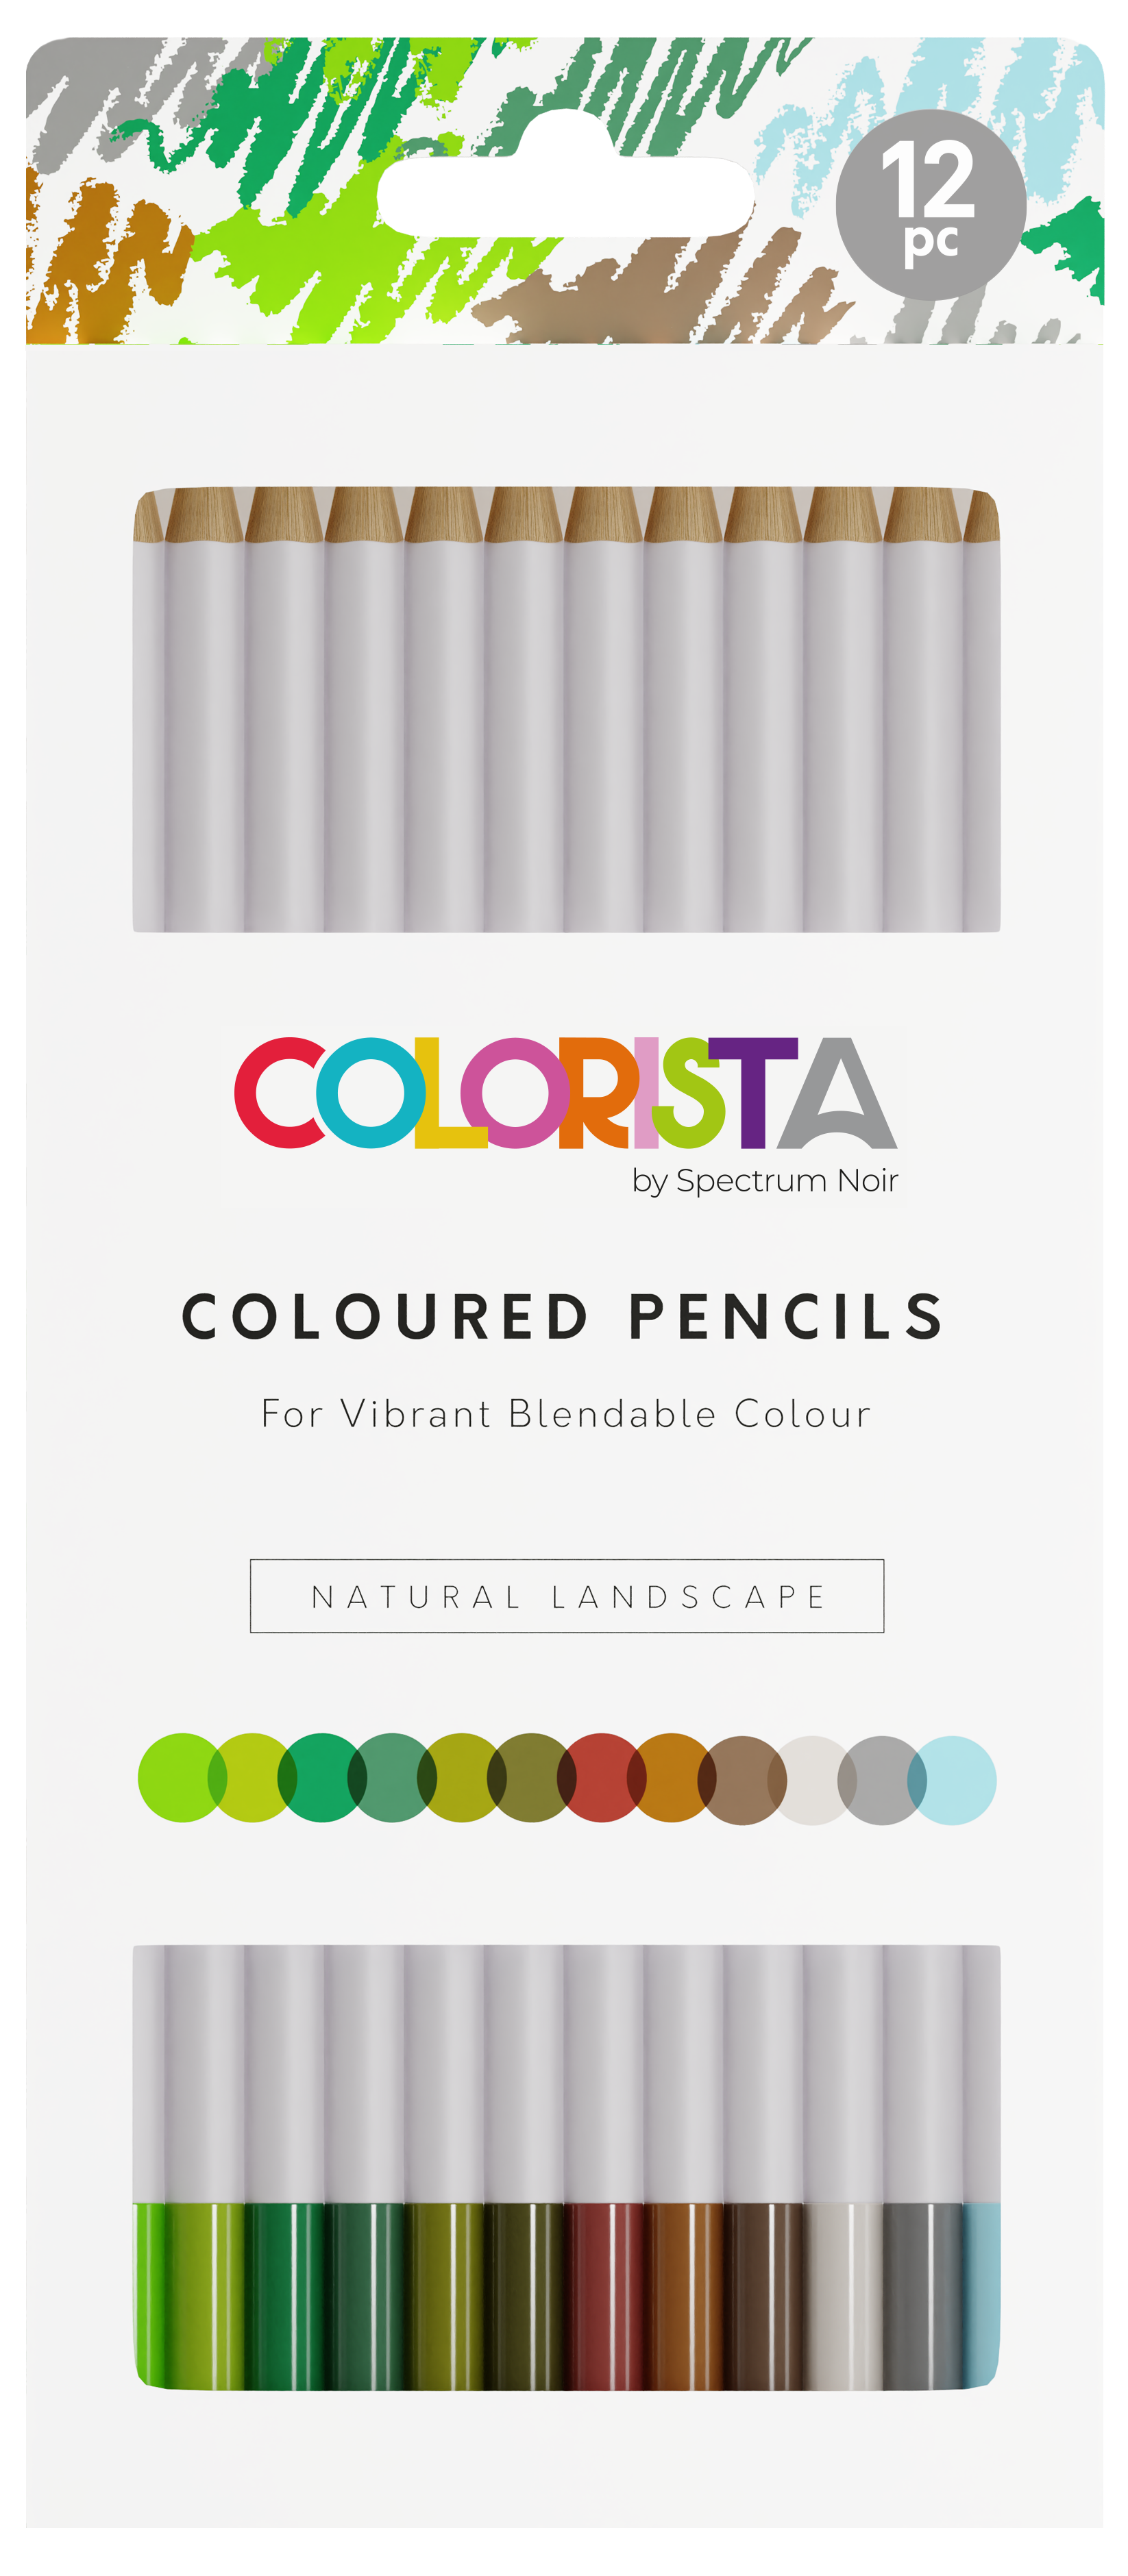 Colorista Glitter Marker 8pc Sparkling Brights